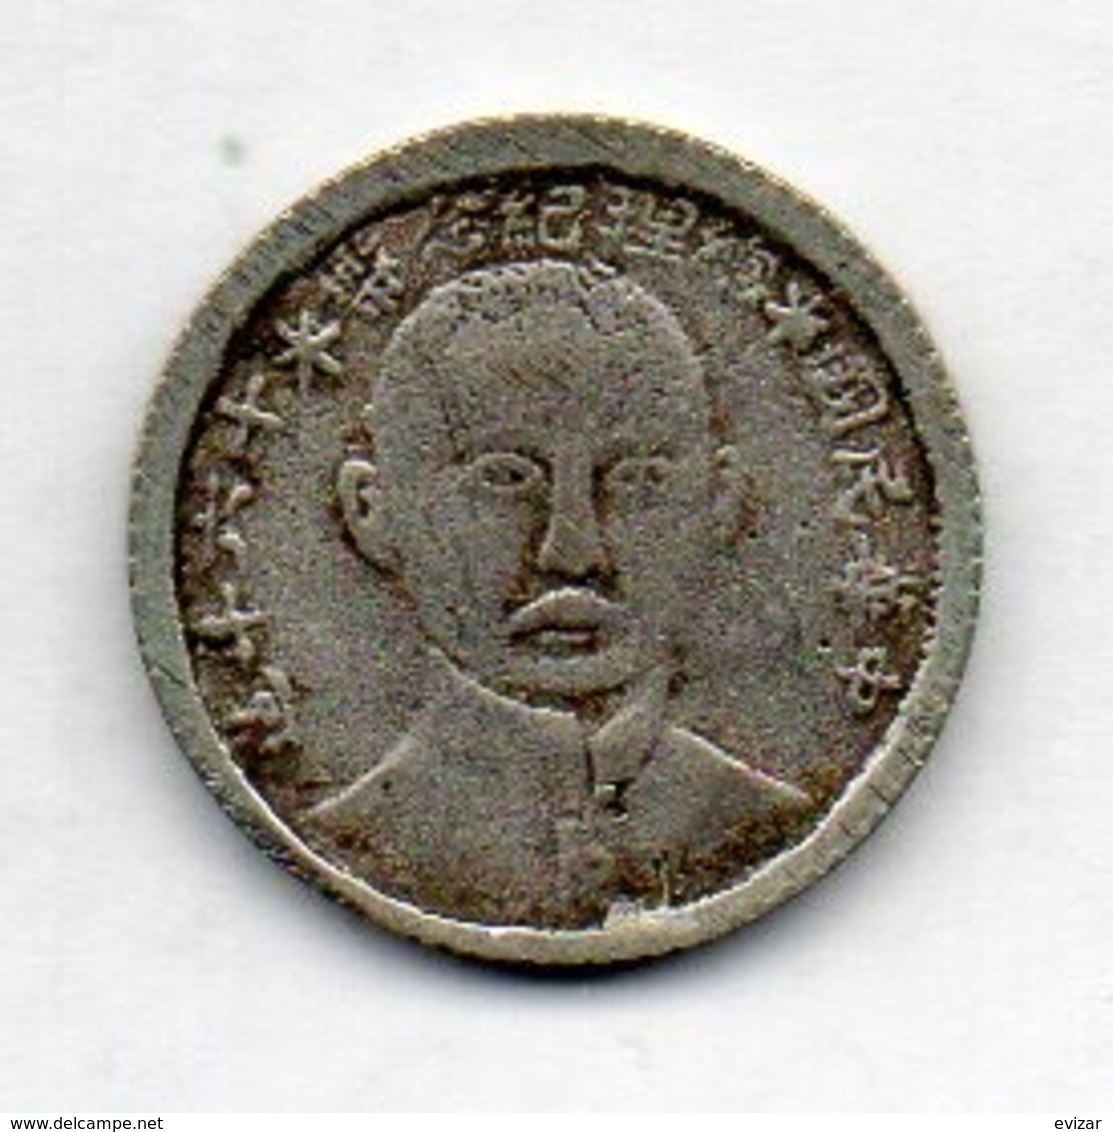 CHINA - REPUBLIC, 10 Cents, Silver, Year (1927), KM #339 - China